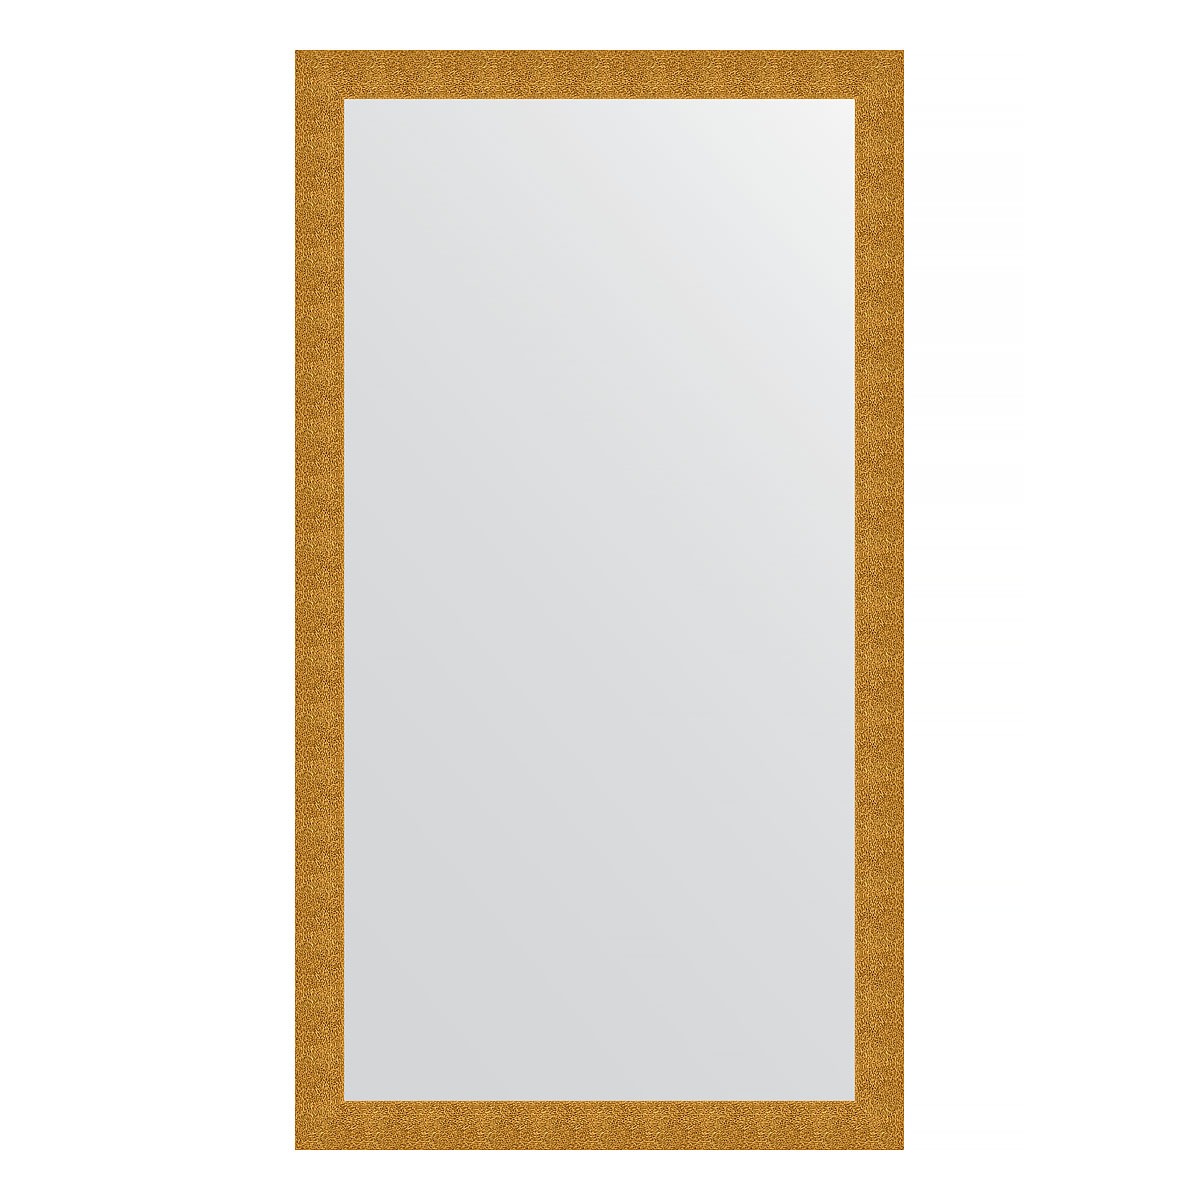 Зеркало напольное в багетной раме Evoform чеканка золотая 90 мм 111x201 см зеркало напольное с гравировкой в багетной раме evoform чеканка серебряная 90 мм 111x201 см